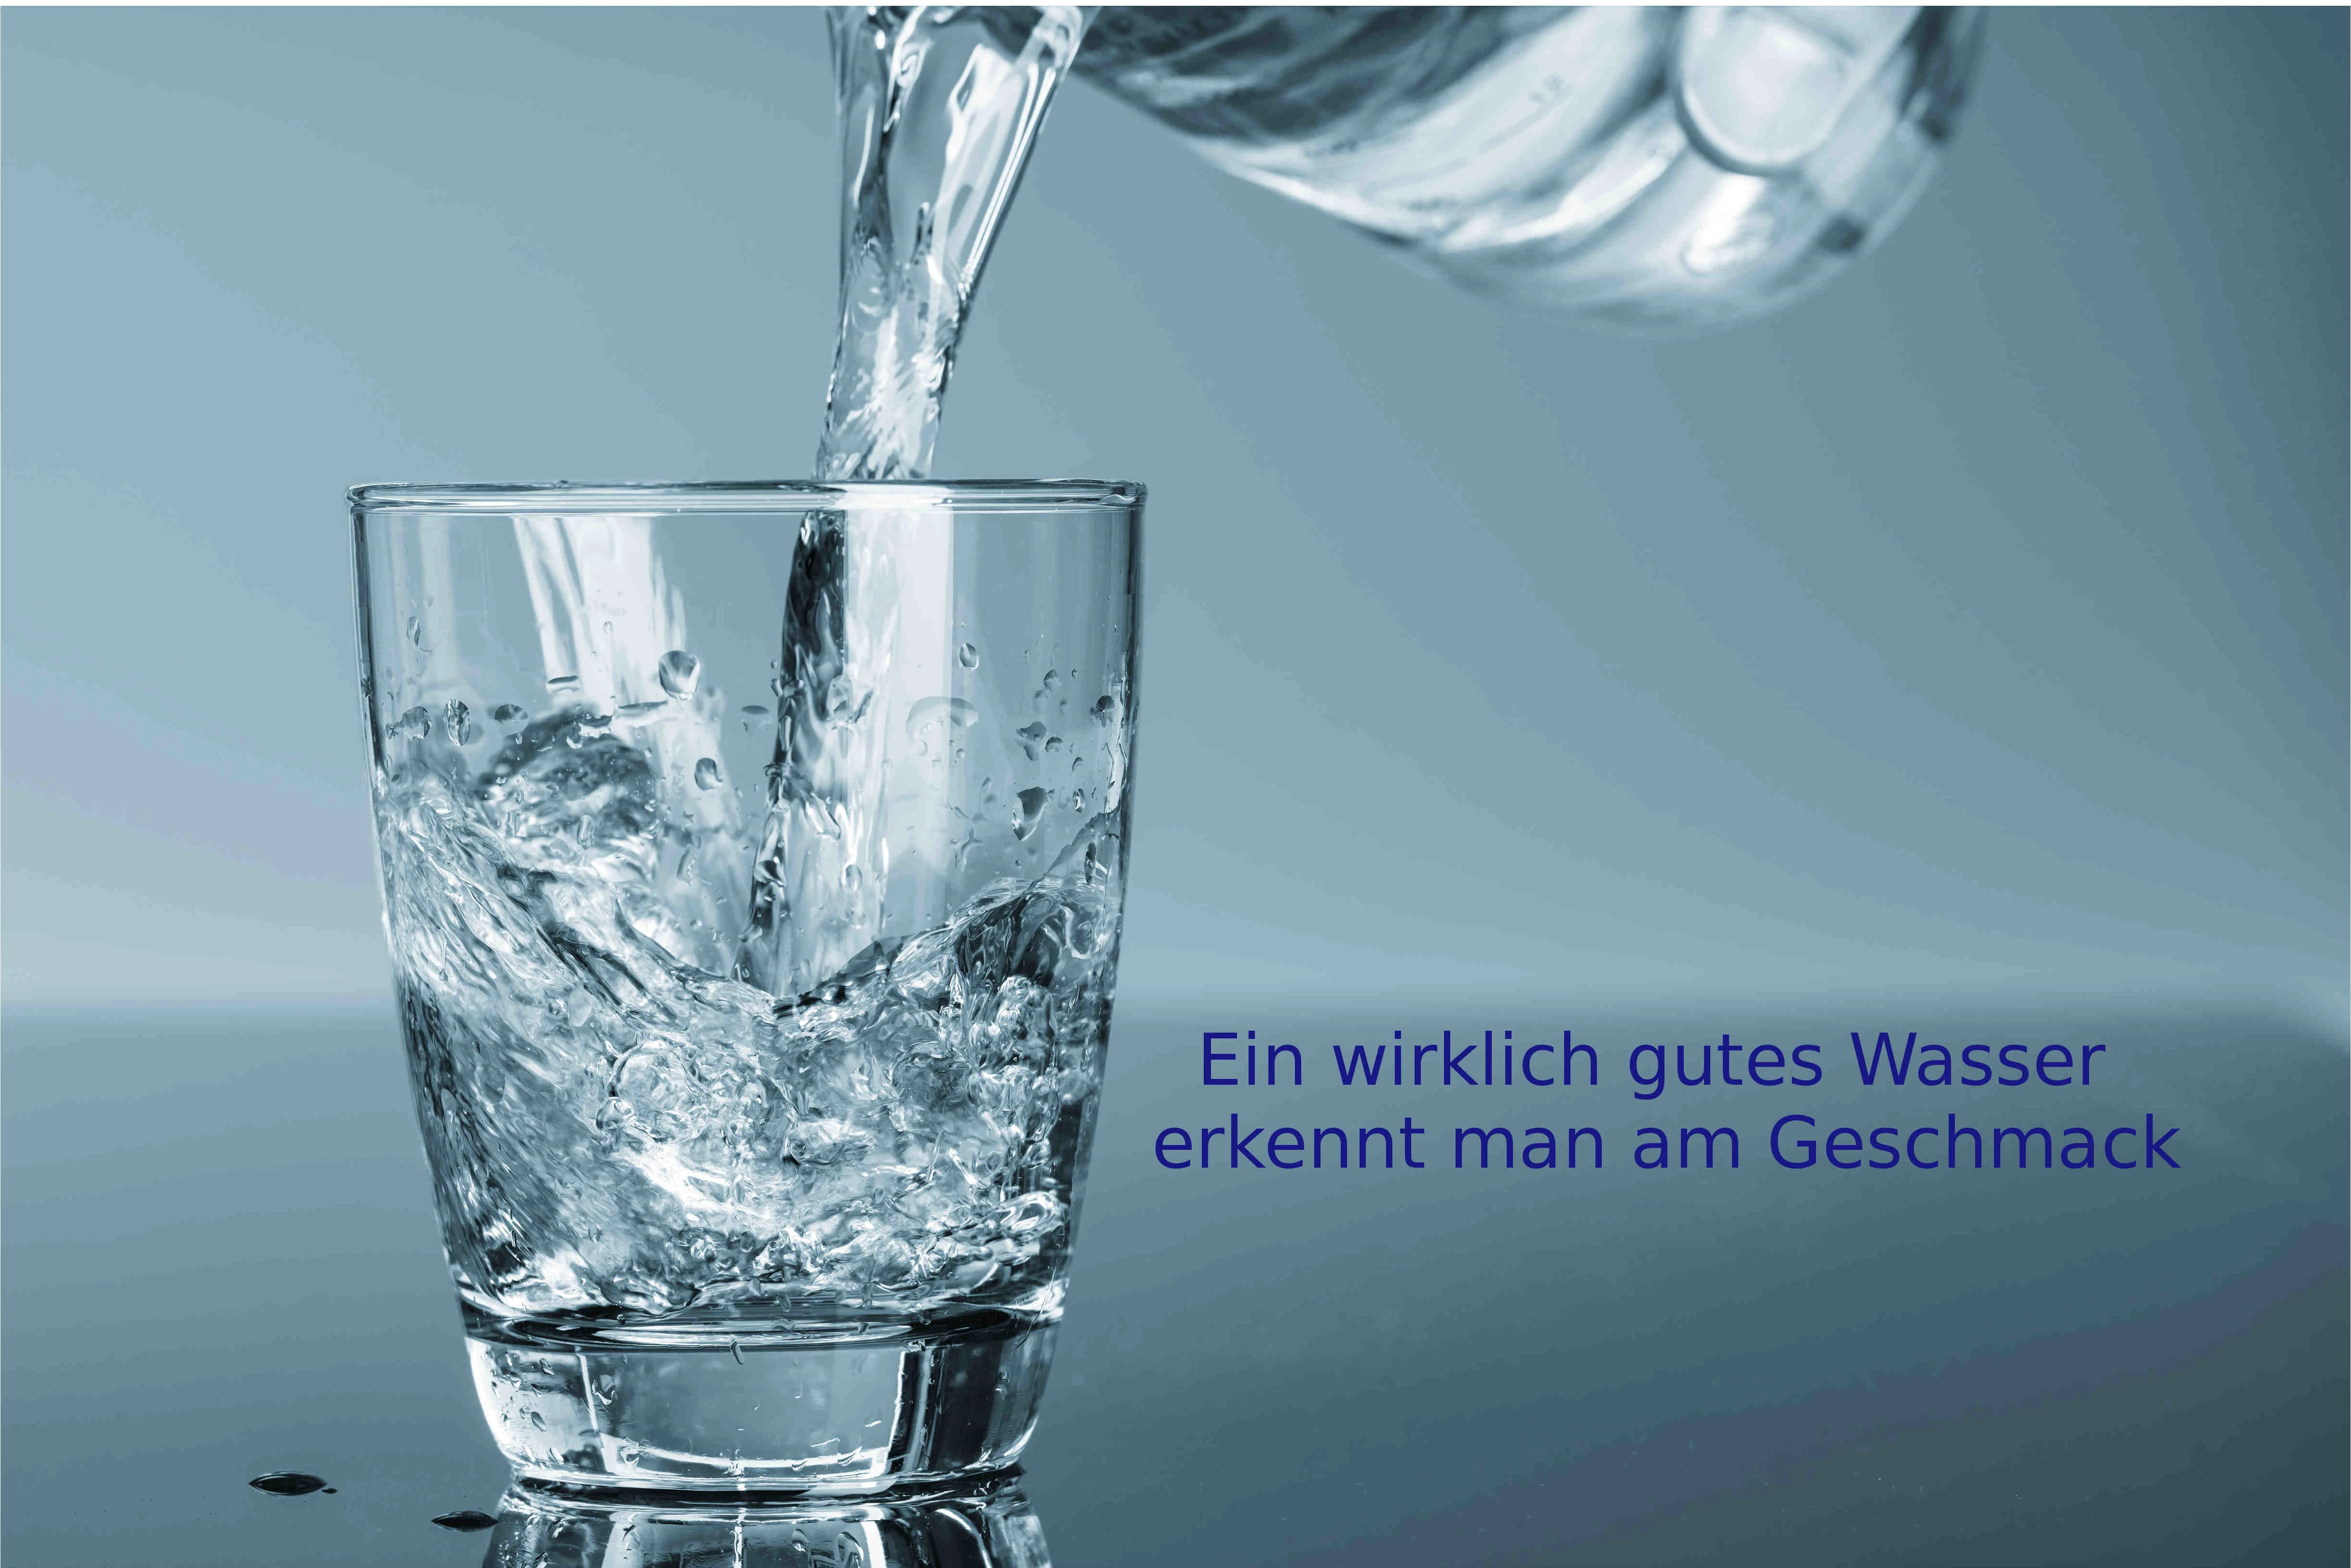 Aus einer Klarglas - Karaffe wird Wasser in ein Wasserglas aus klarem Glas gegossen.